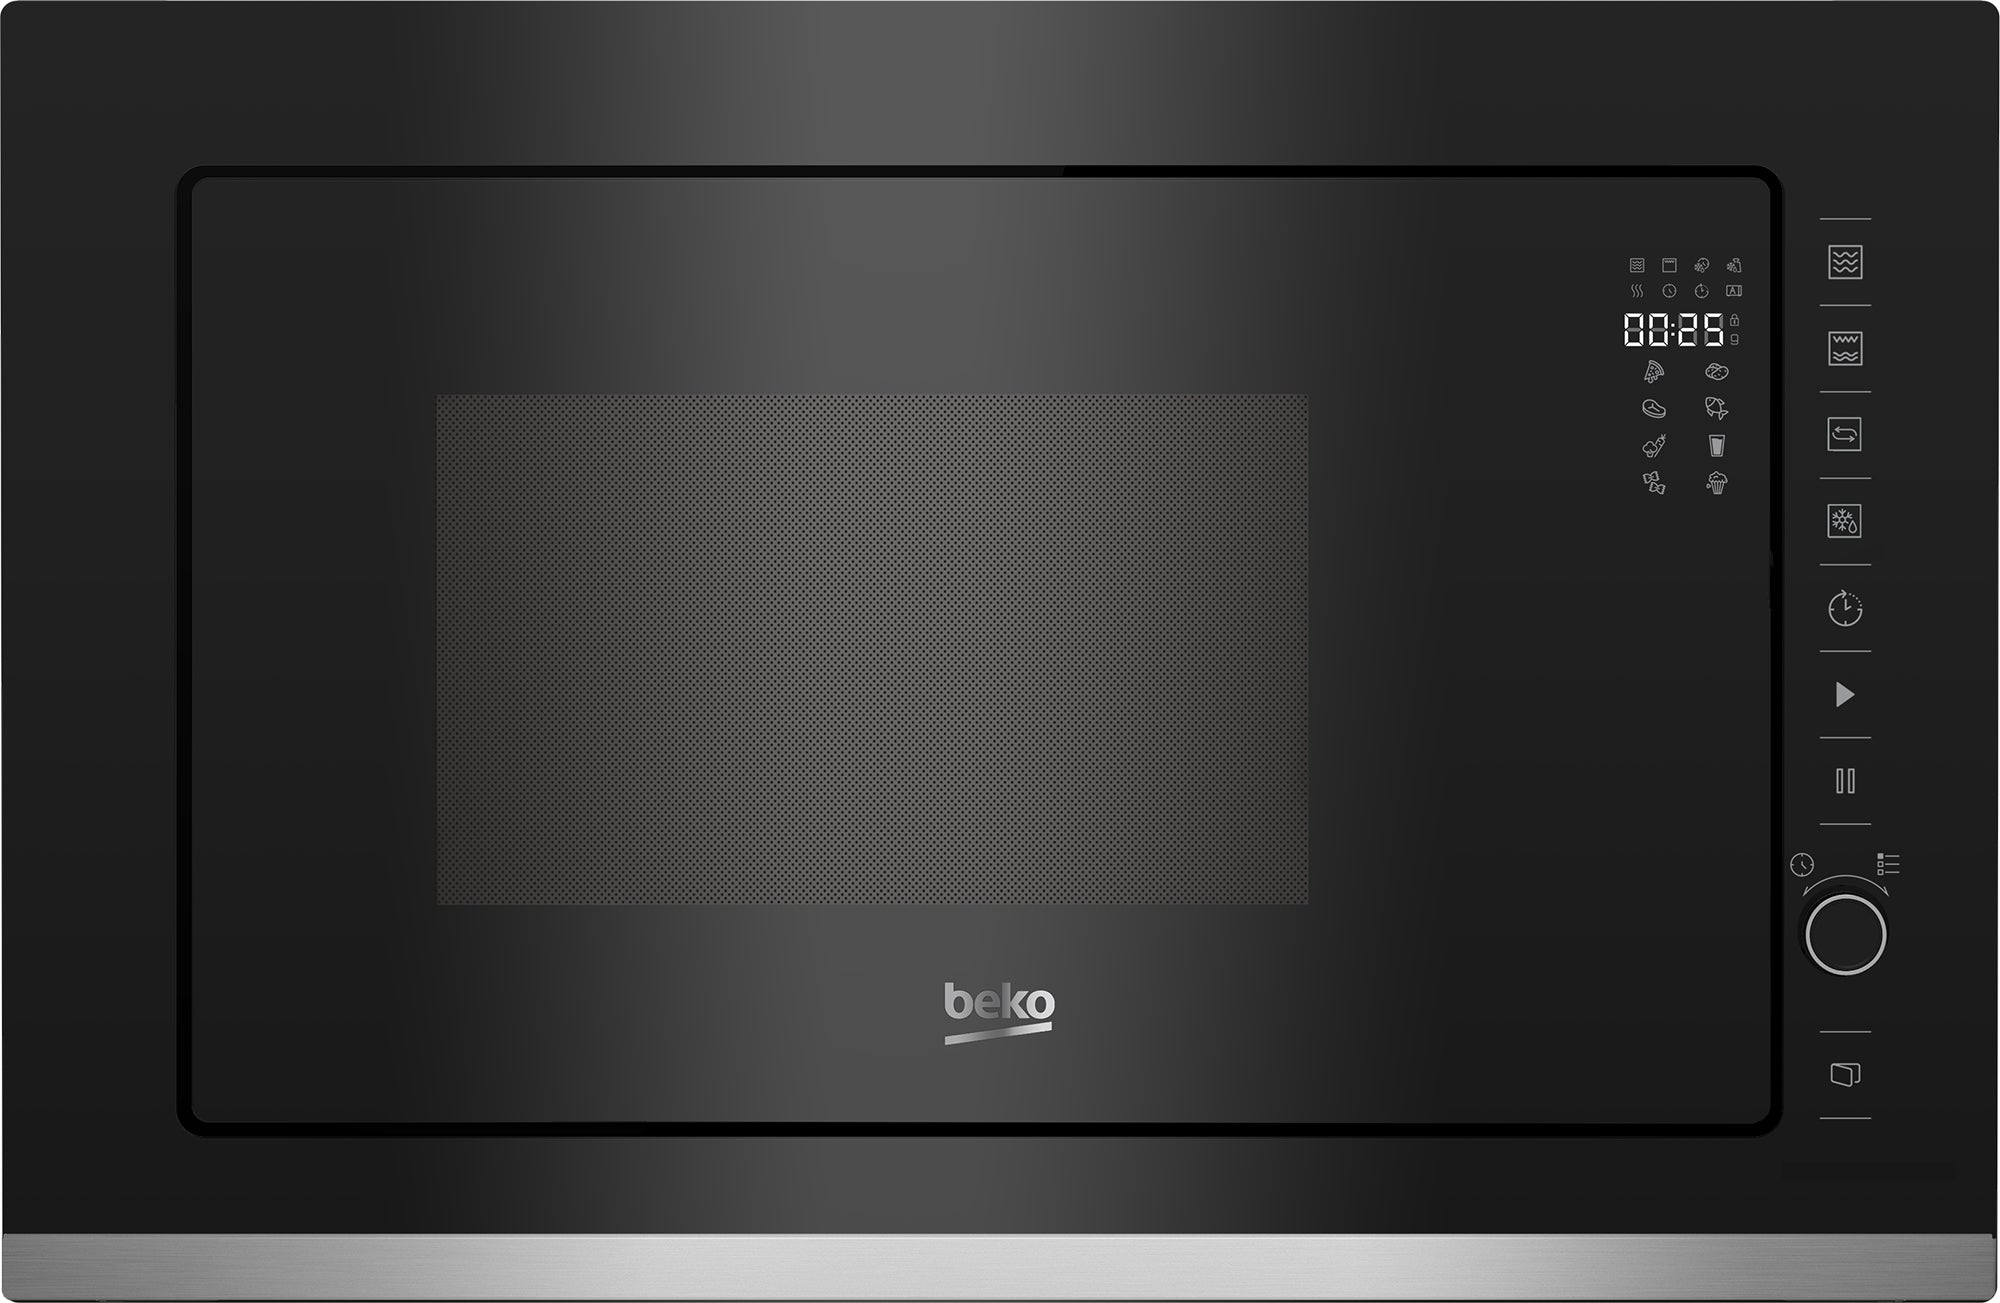 Beko 25L Built-in Microwave Oven Black BMCB25433X